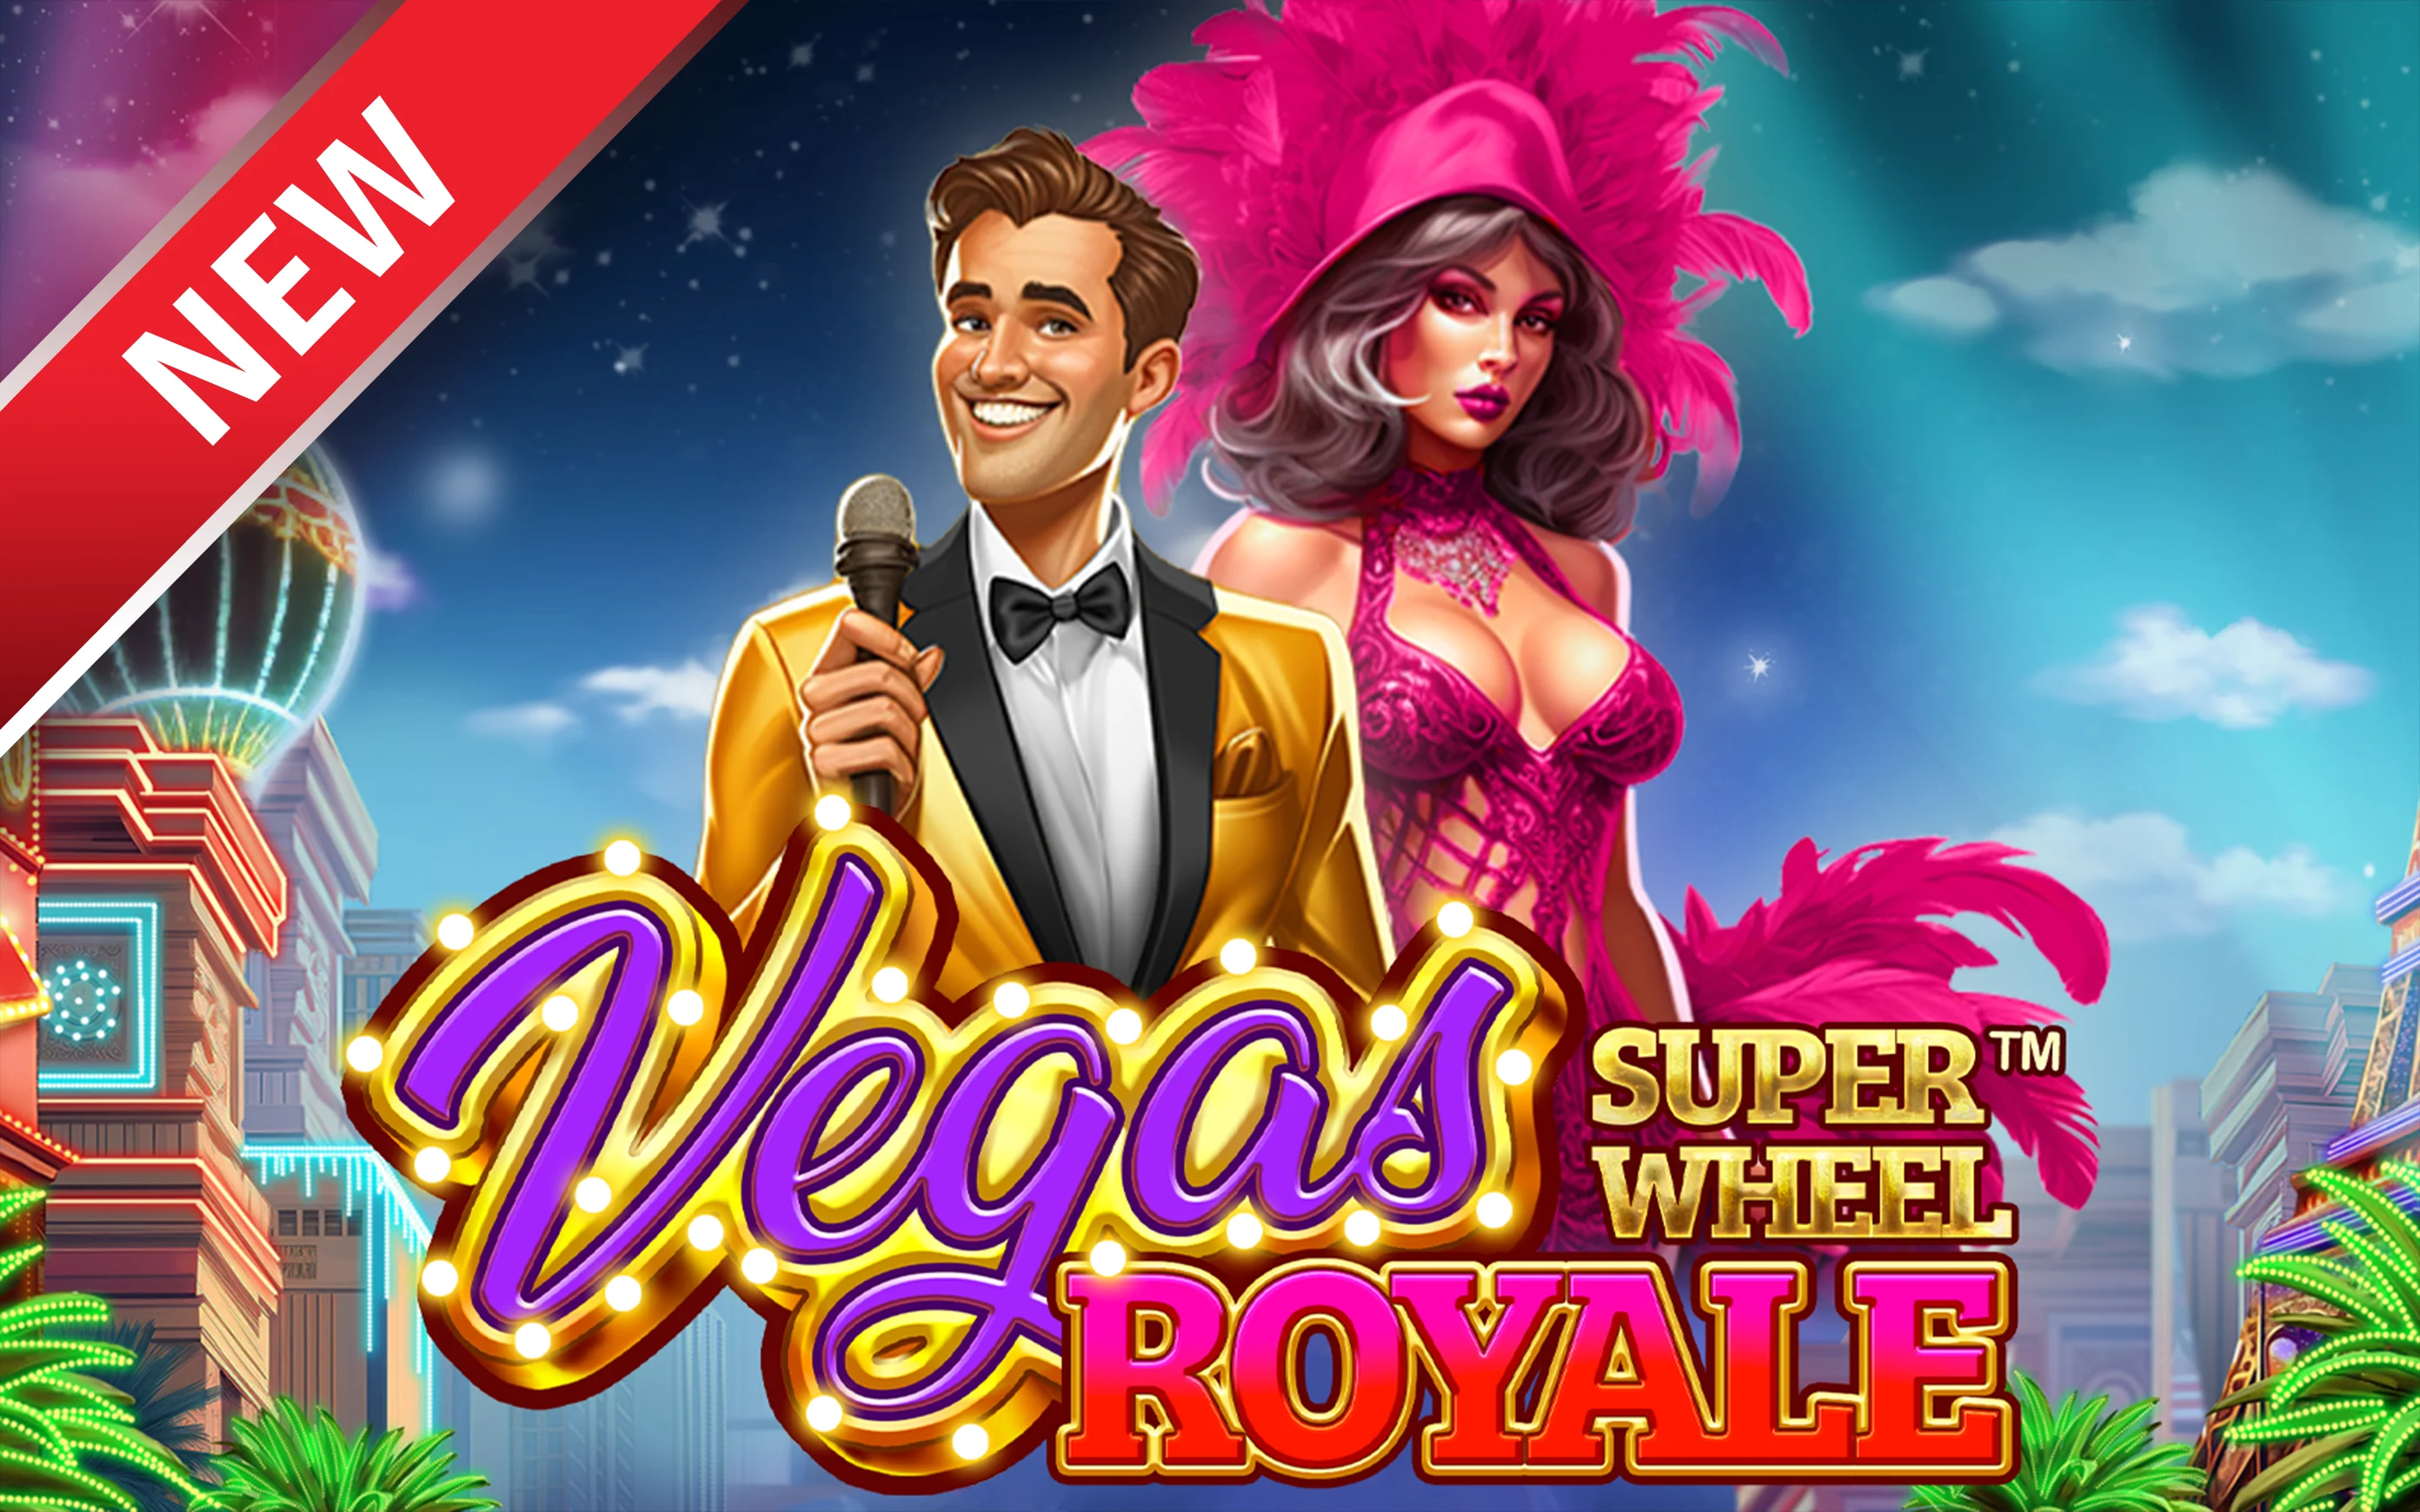 Играйте Vegas Royale Super Wheel™ на Starcasino.be онлайн казино